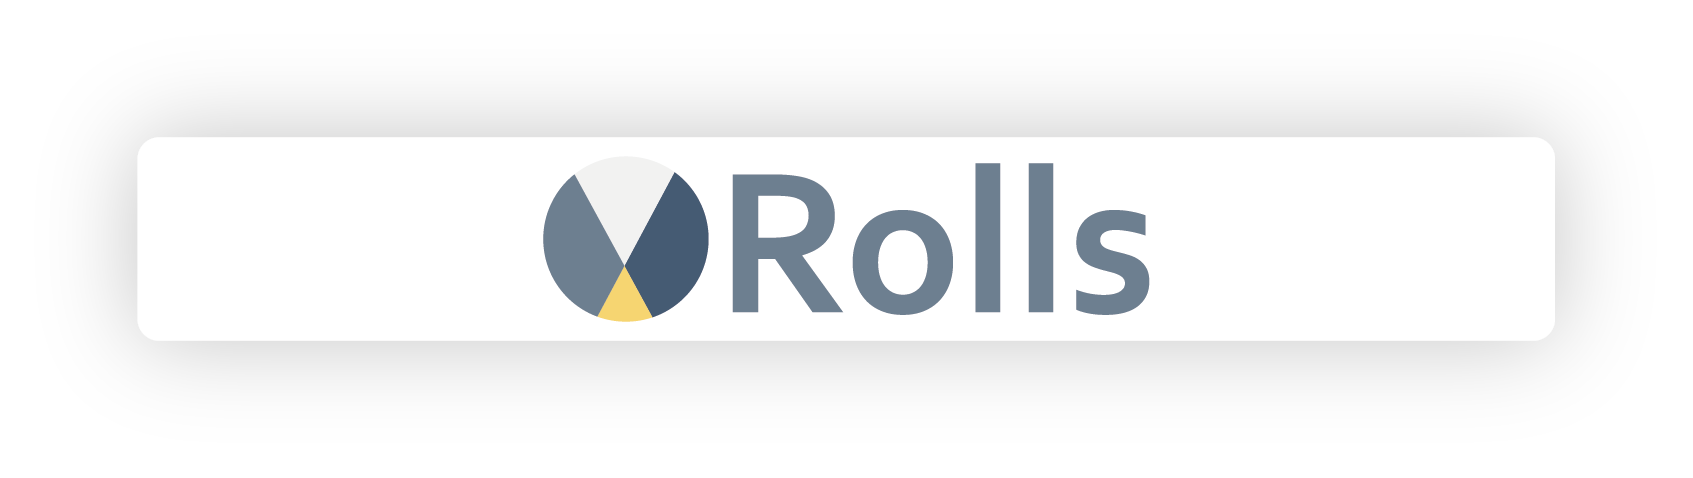 Rolls koppeling